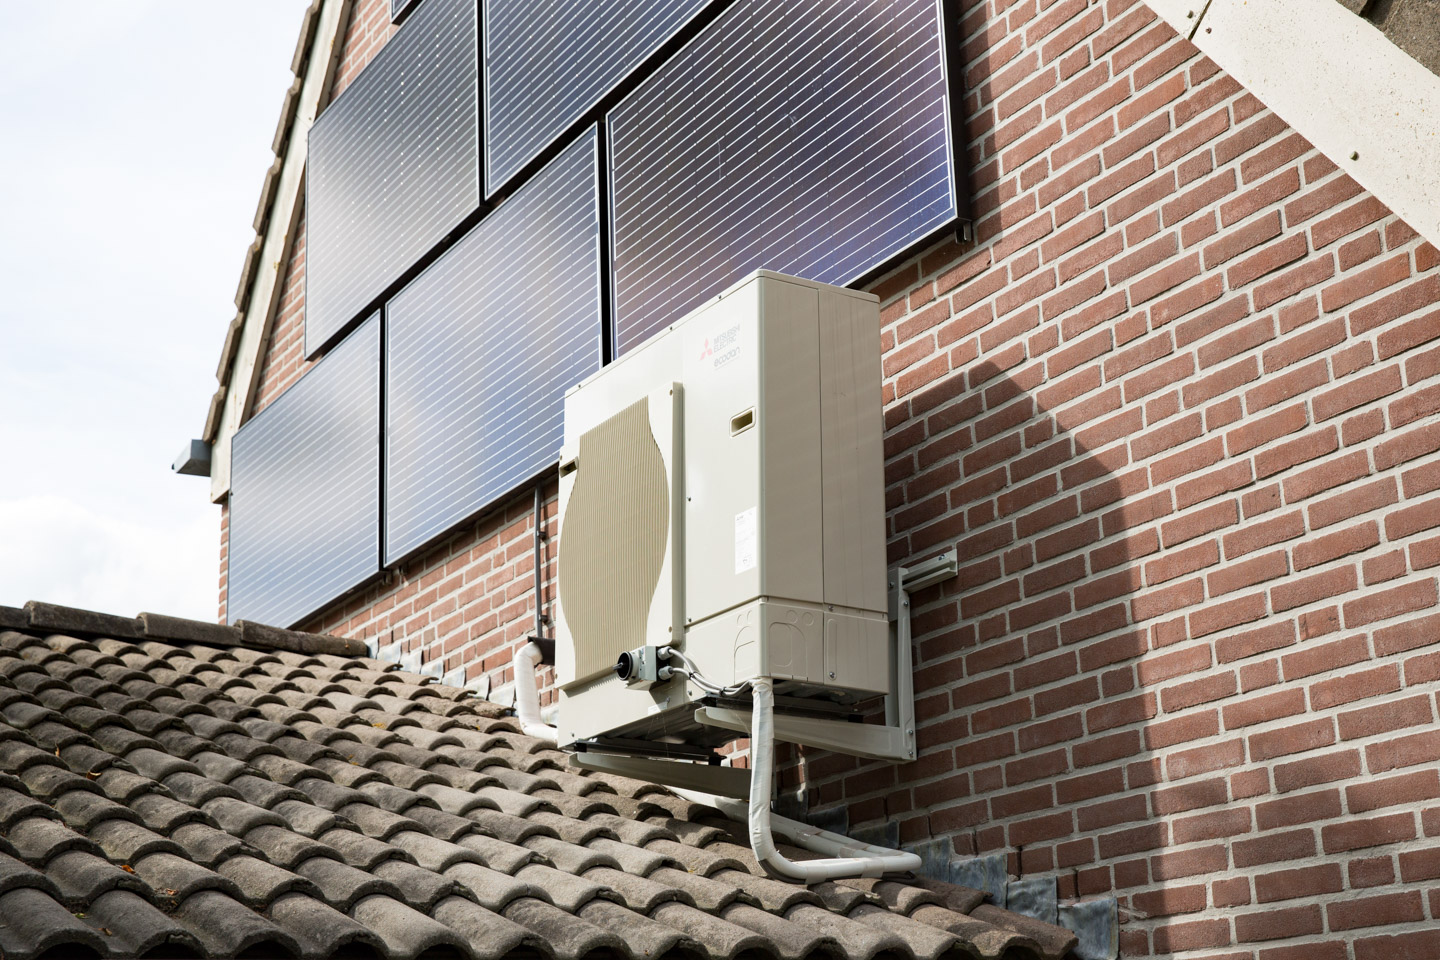 Energieneutraal-huis-woonwijk-wonen-thuisbaas-credit-Chantal-Bekker-GraphicAlert-24-zonnepanelen-dak-warmtepomp